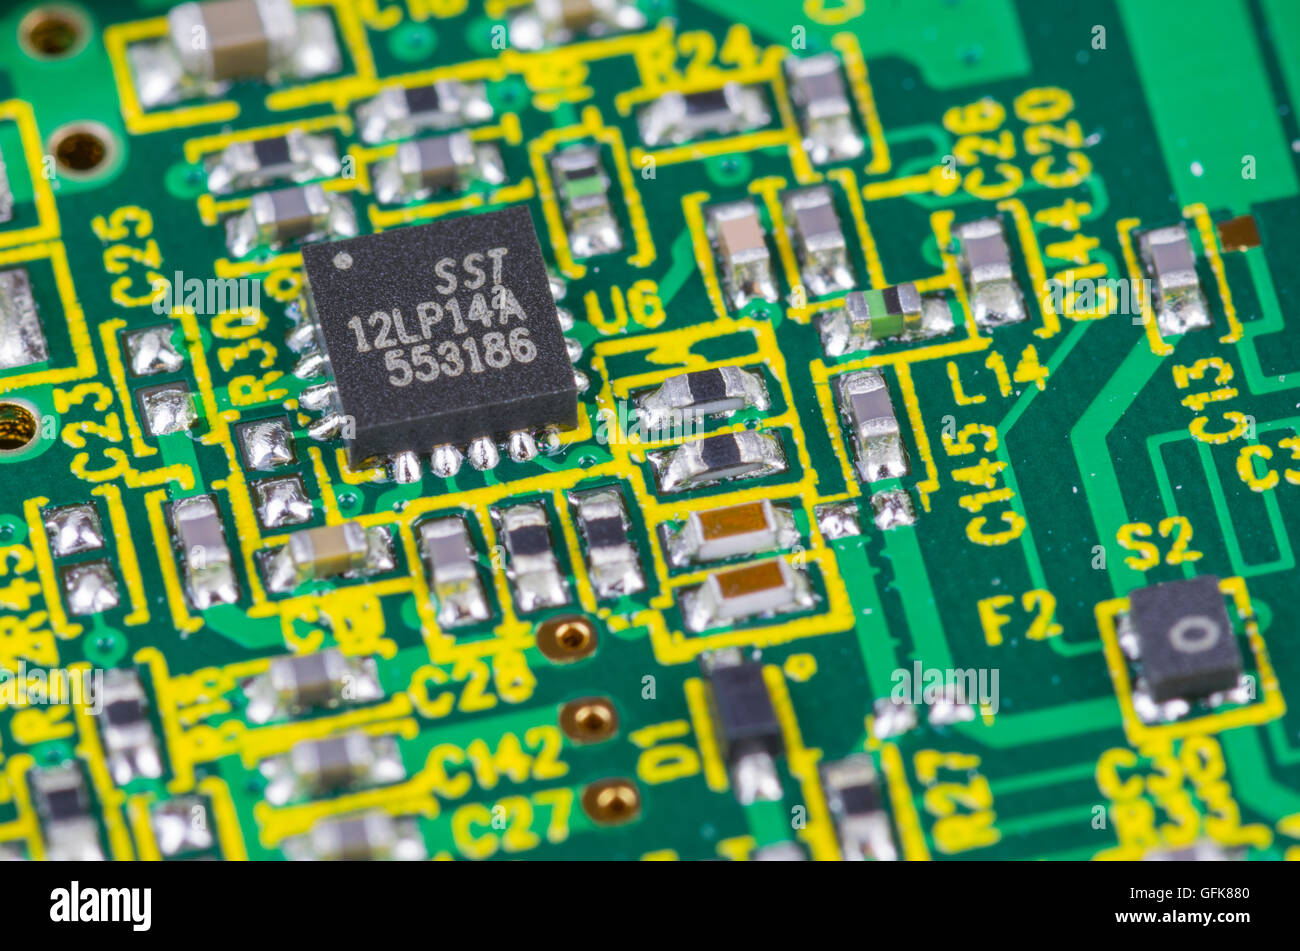 SST-Mikrochip auf ein Elektronik-Platine. Stockfoto